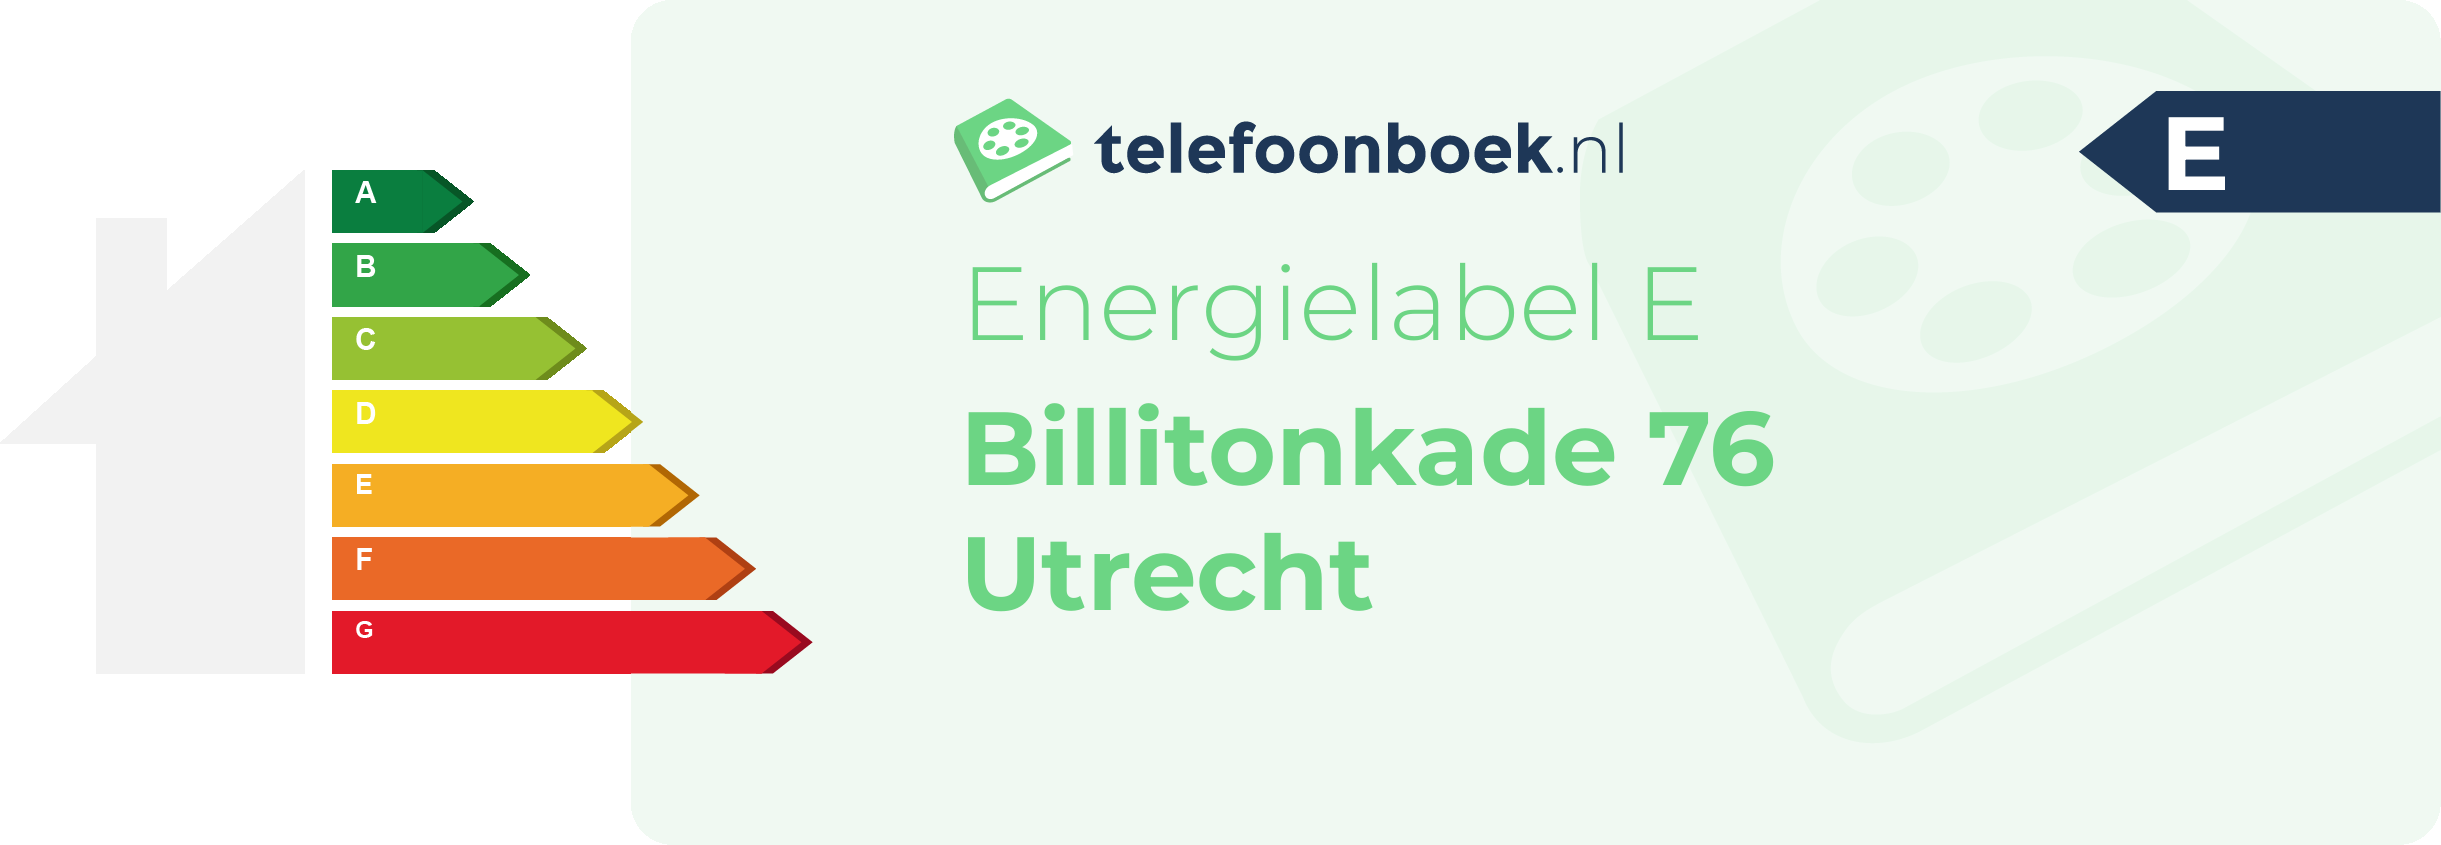 Energielabel Billitonkade 76 Utrecht